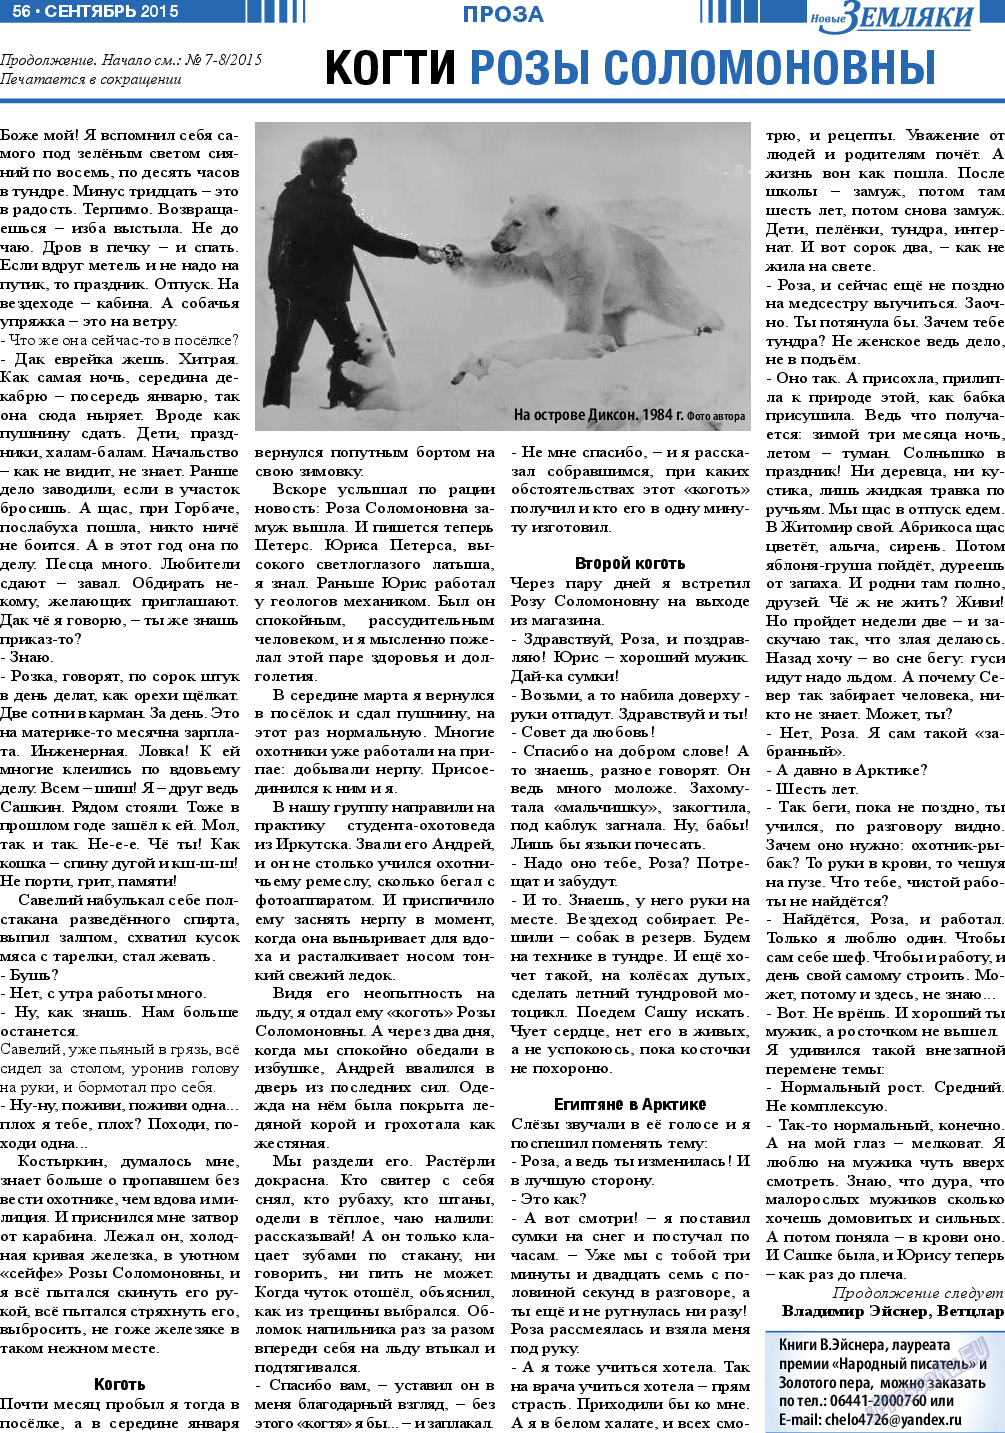 Новые Земляки, газета. 2015 №9 стр.56